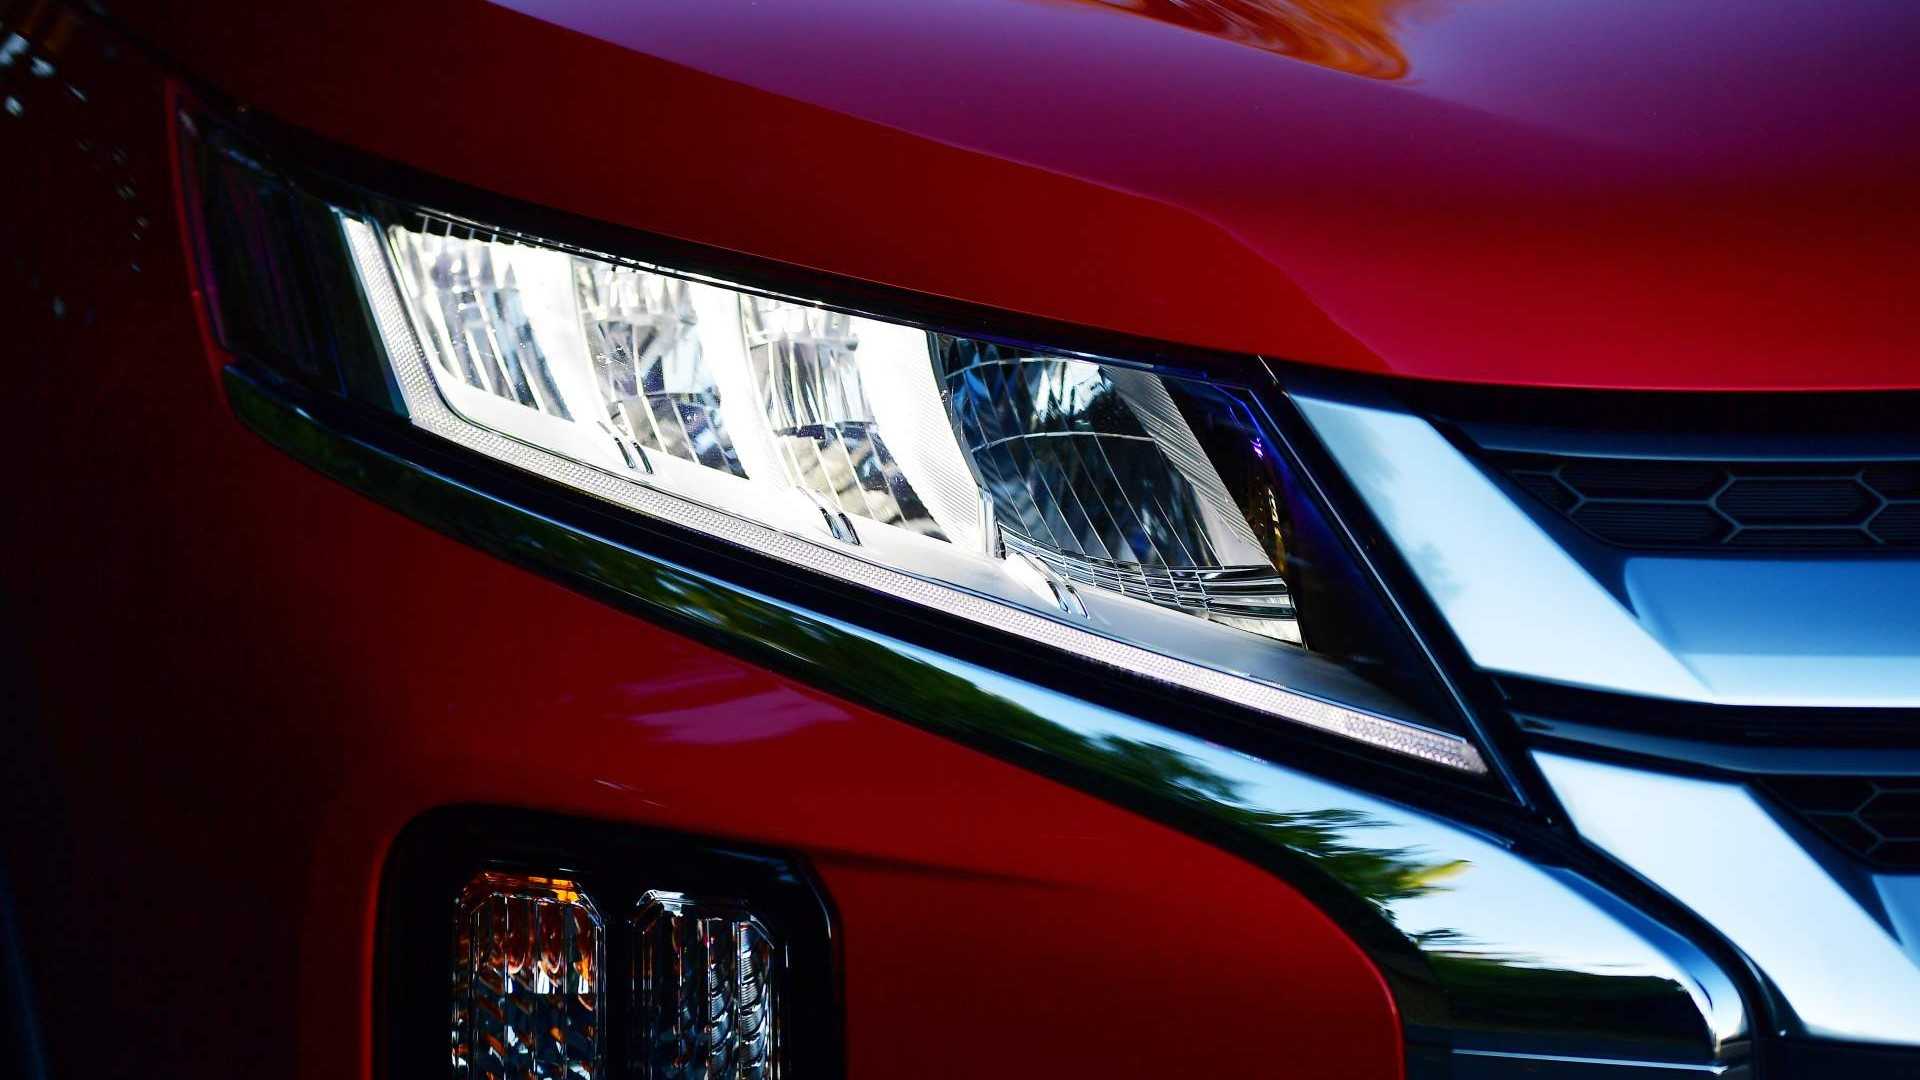 ميتسوبيشي ASX exterior - Headlight